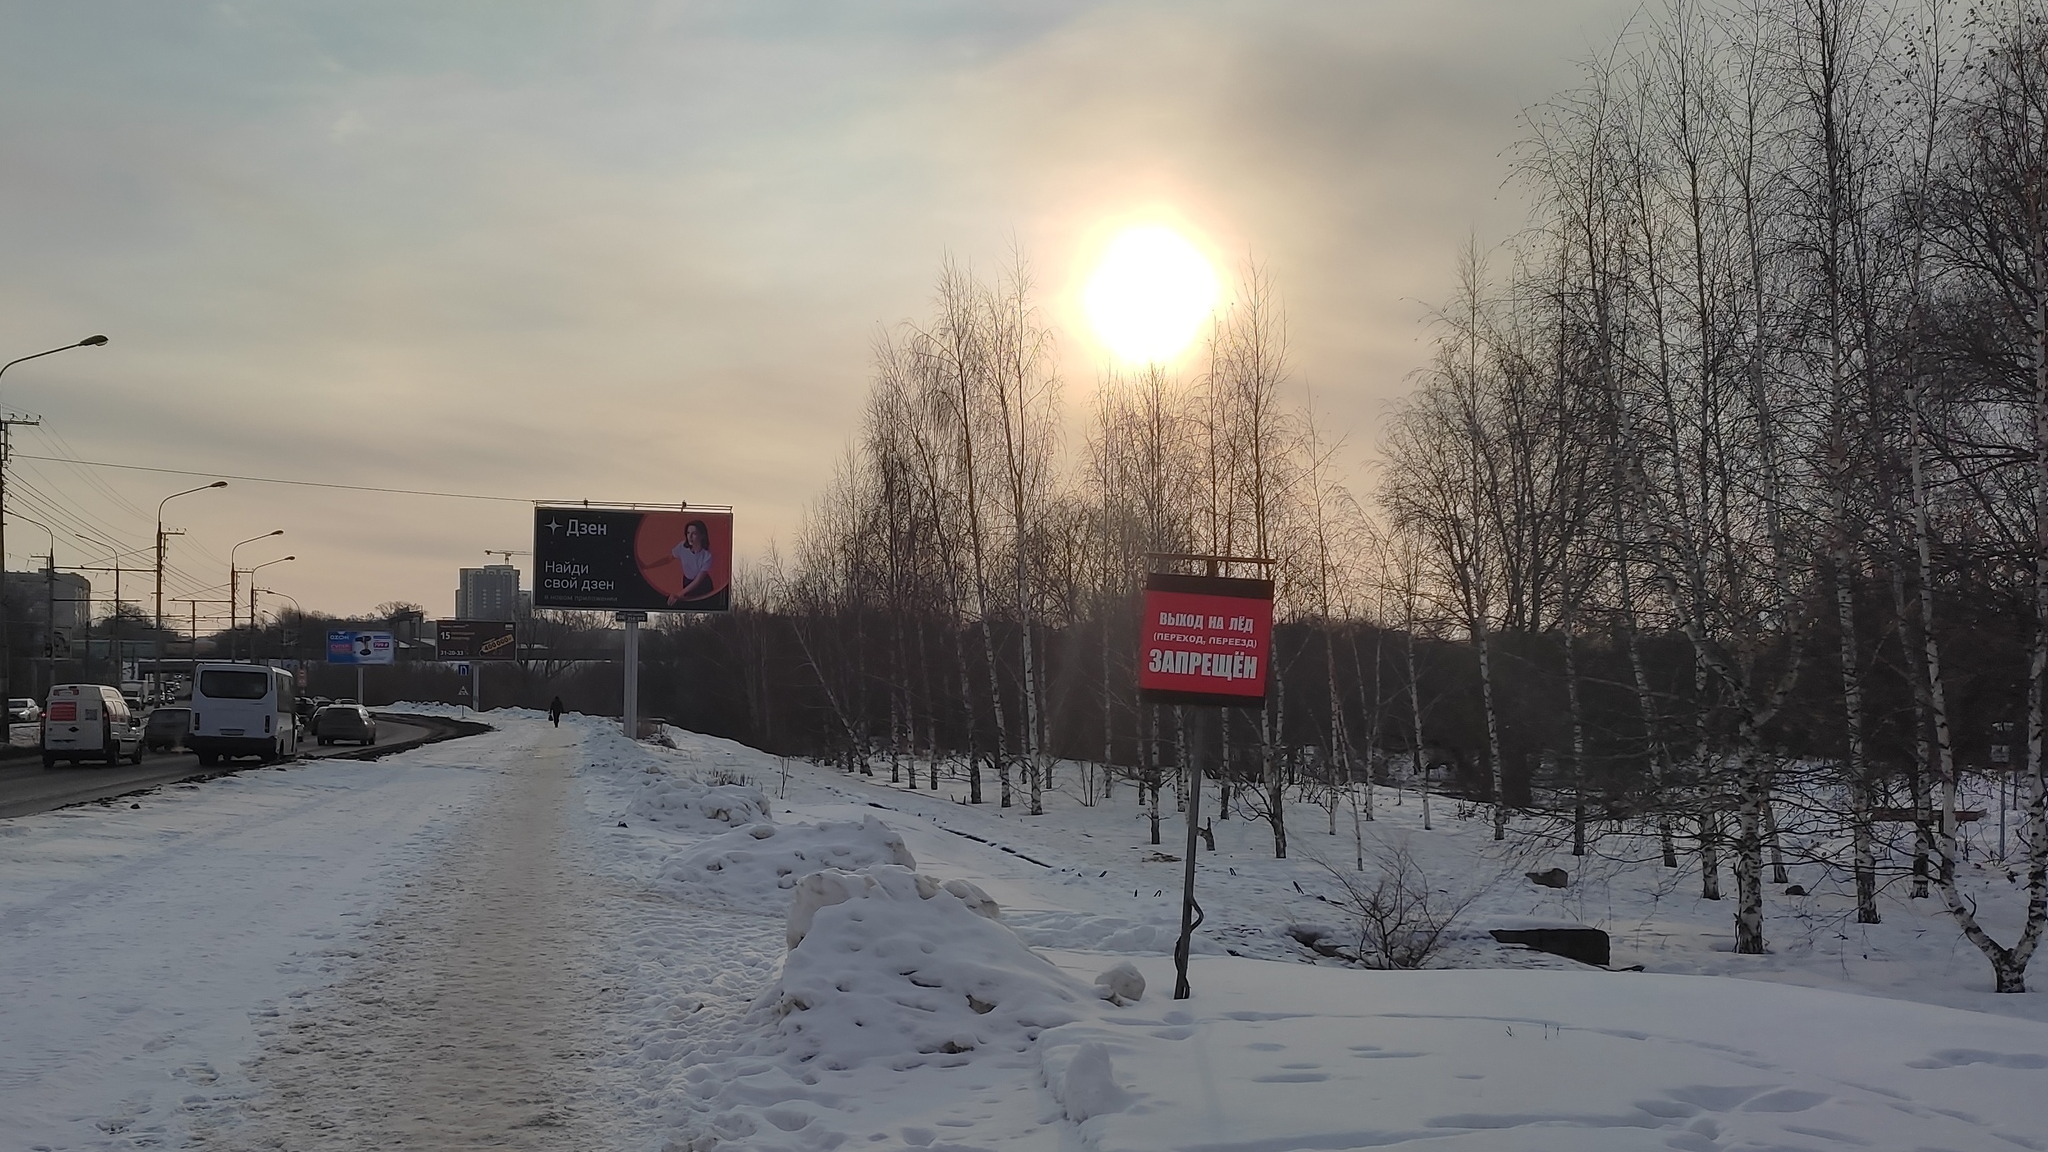 Замглавы Ульяновска Болдакин отреагировал на сброс строительного мусора в Свиягу